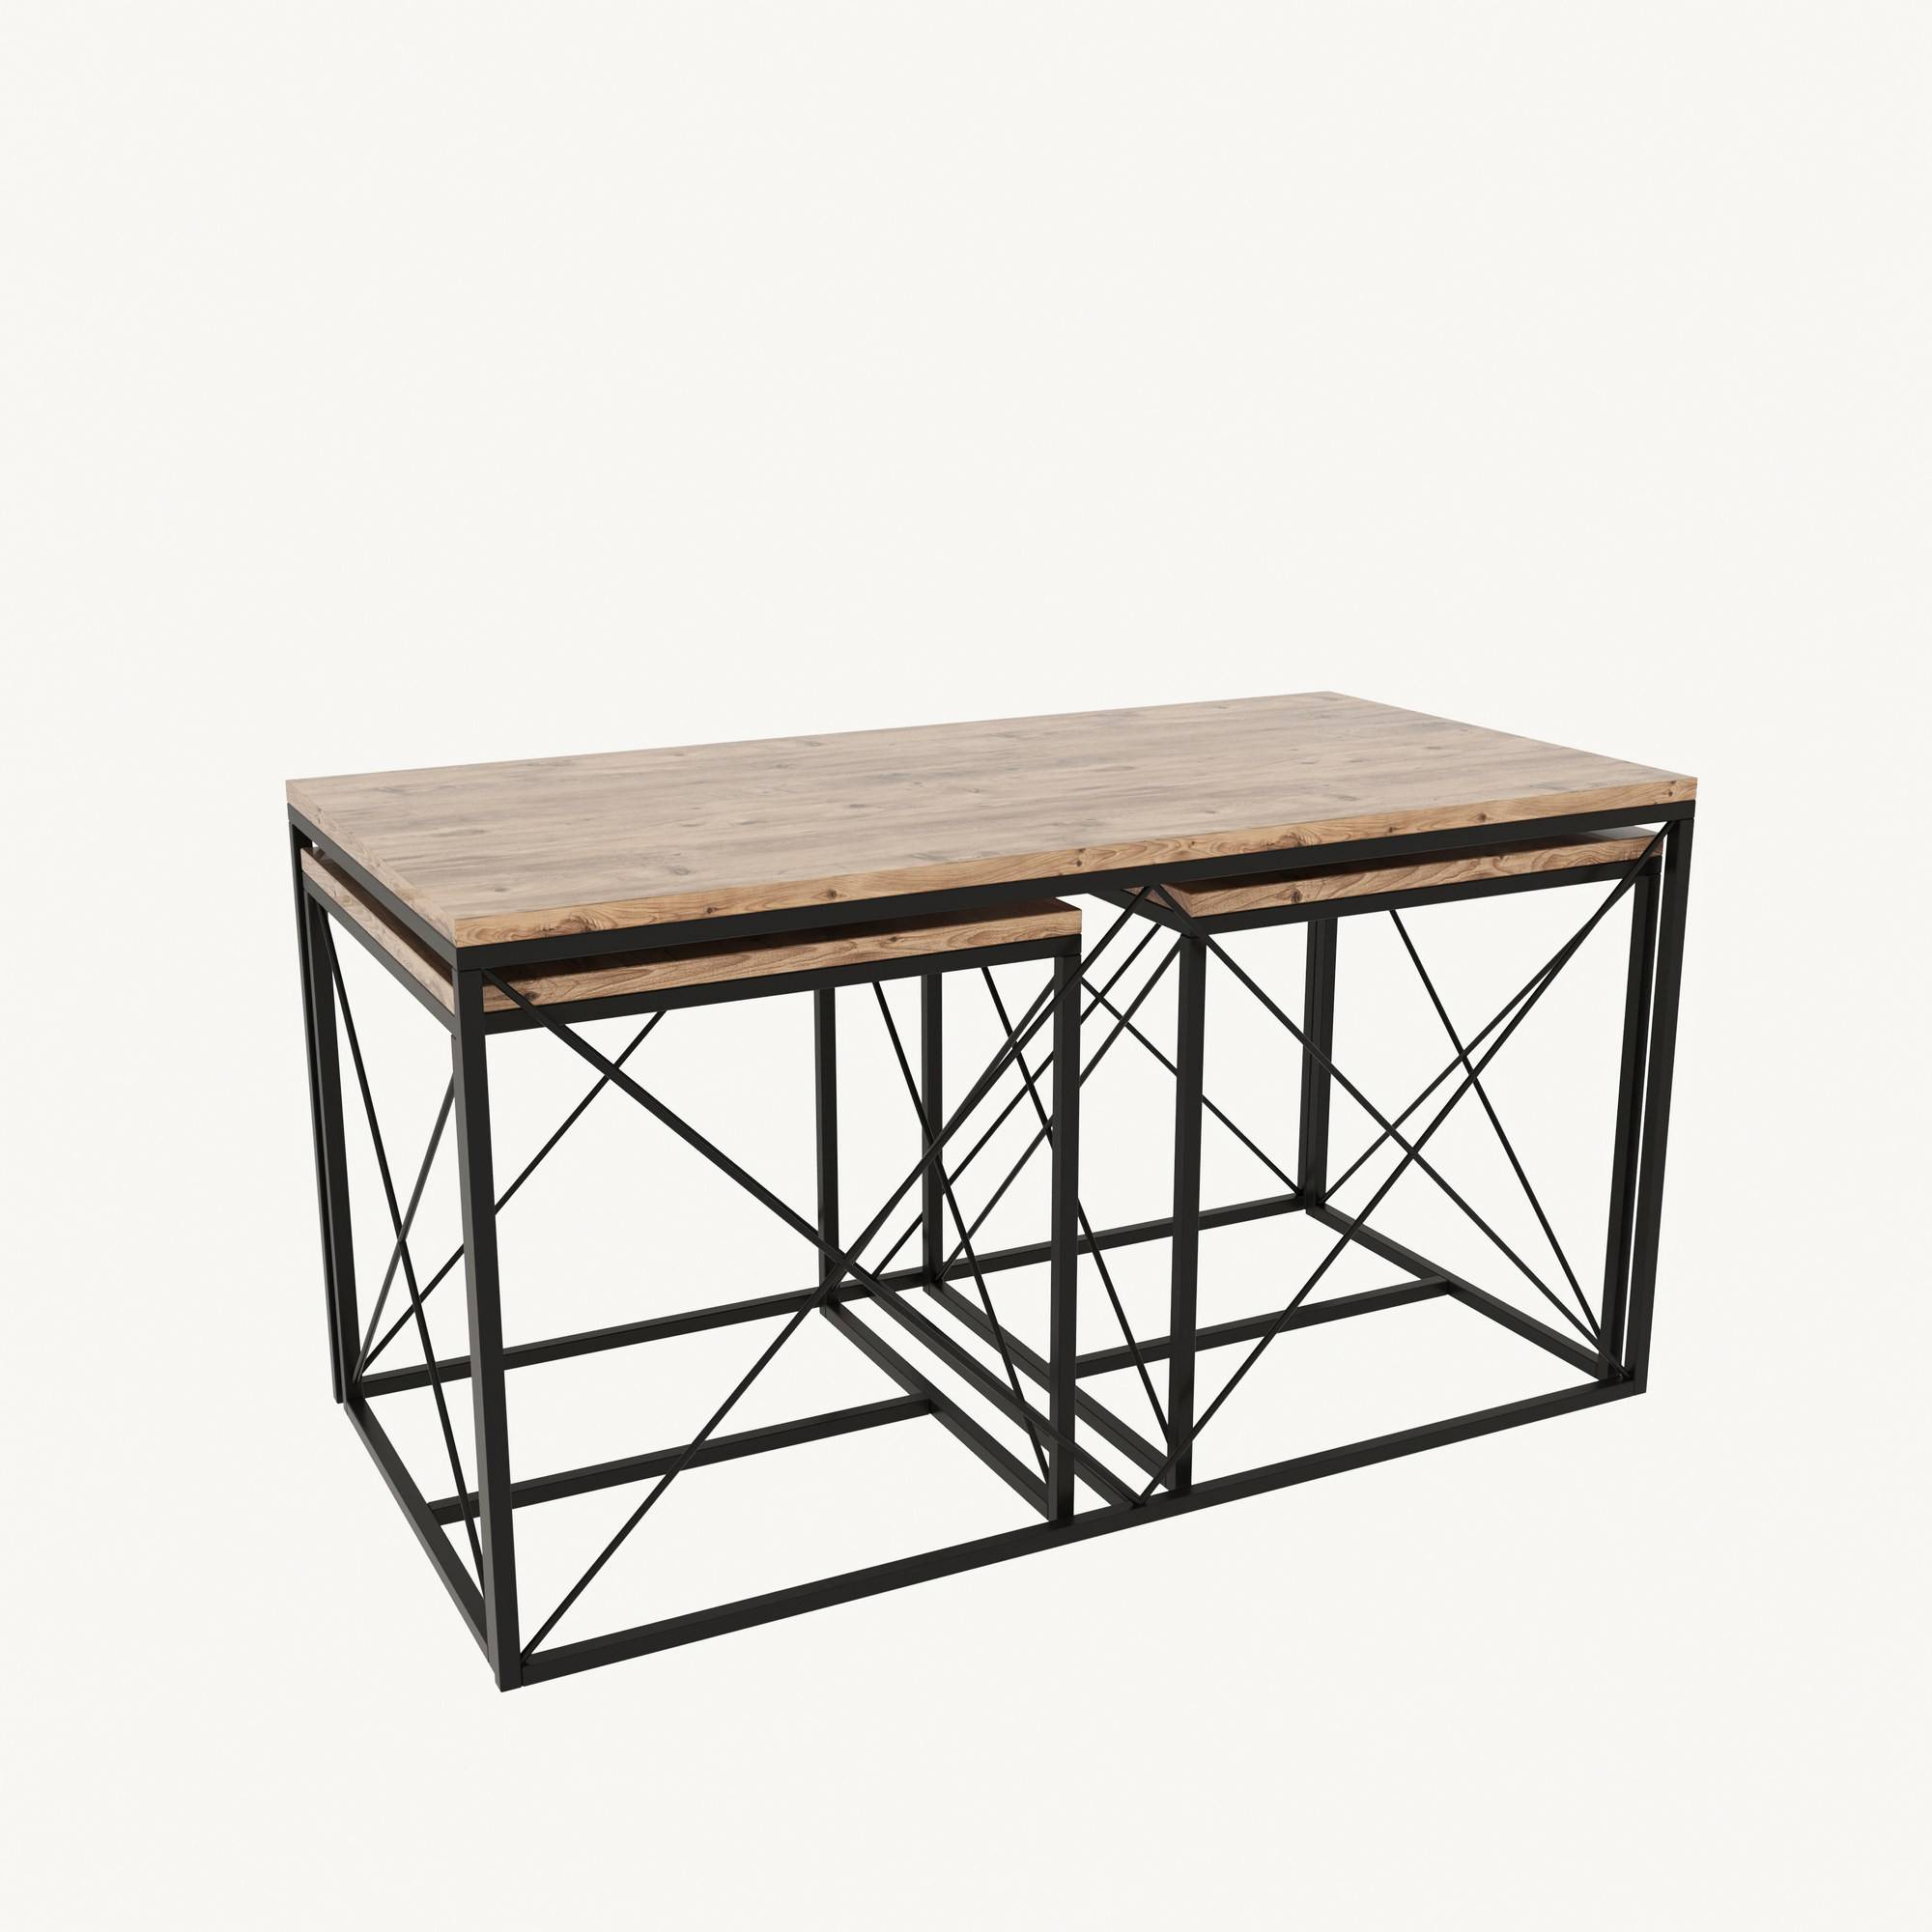 Set van 3 Langkawa salontafels in industriële stijl in zwart metaal en licht hout